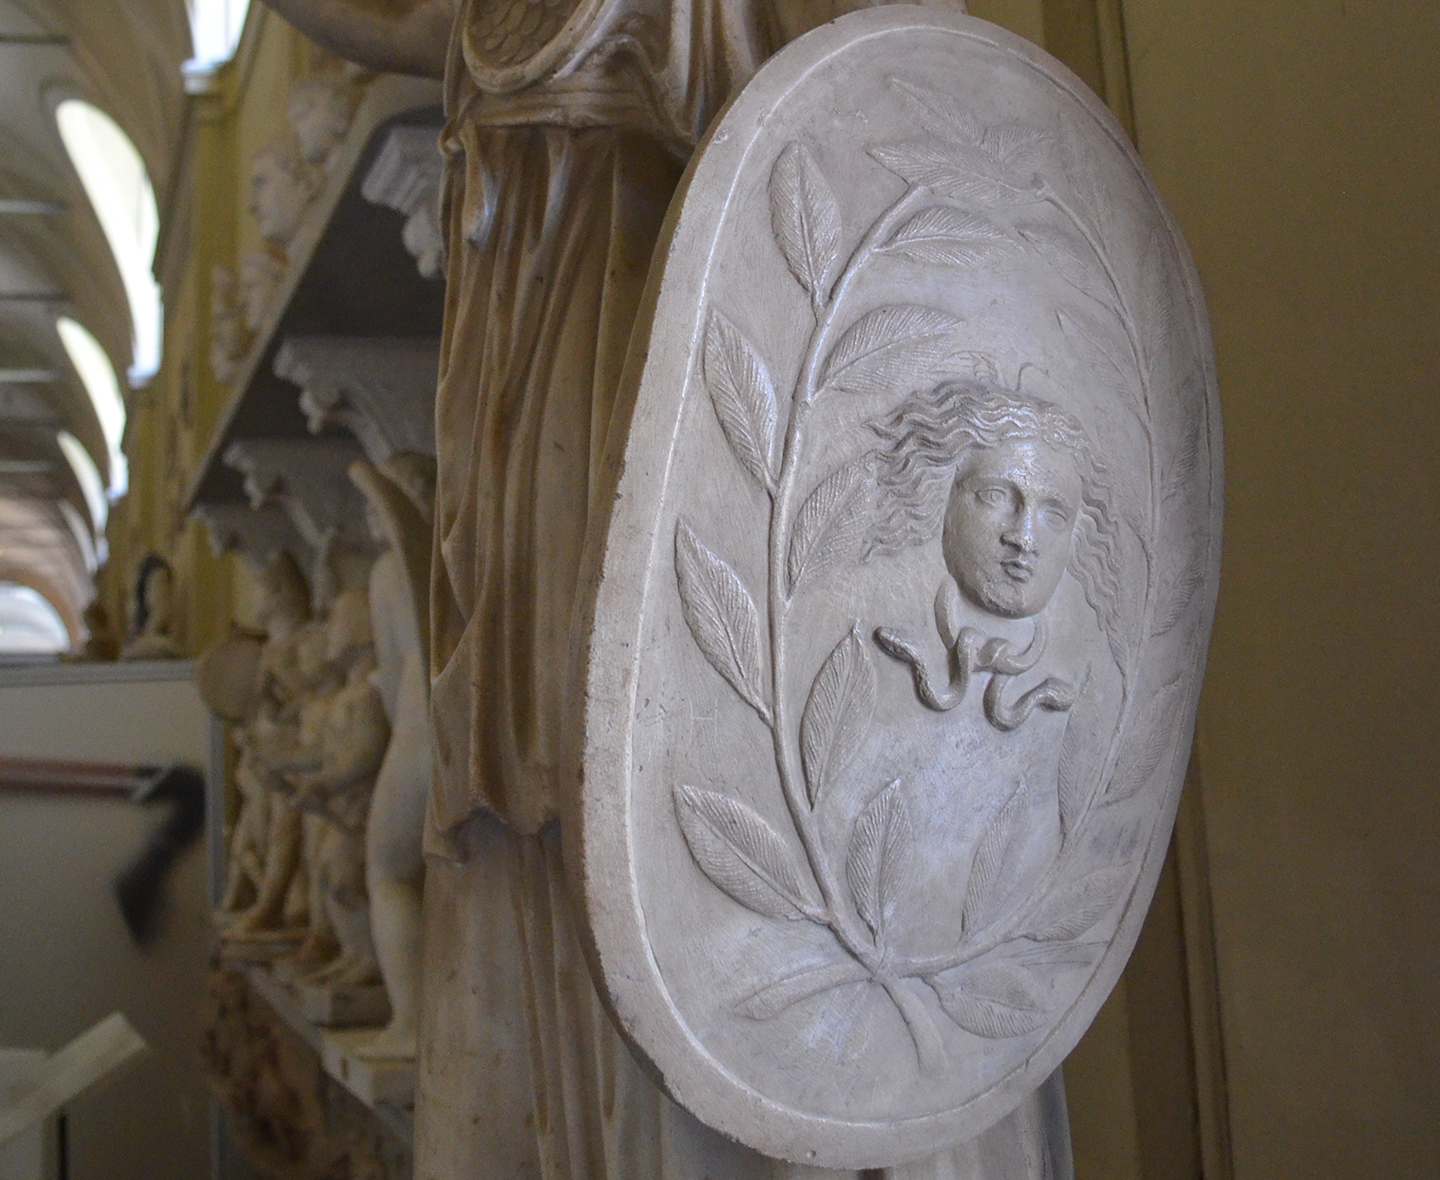 Chi tiết tấm khiên của Nữ thần Athena từ một bức tượng tại Bảo tàng Vatican ở Rome. (Ảnh: Ảnh cắt/Darafsh/CC BY-SA 3.0 DEED)